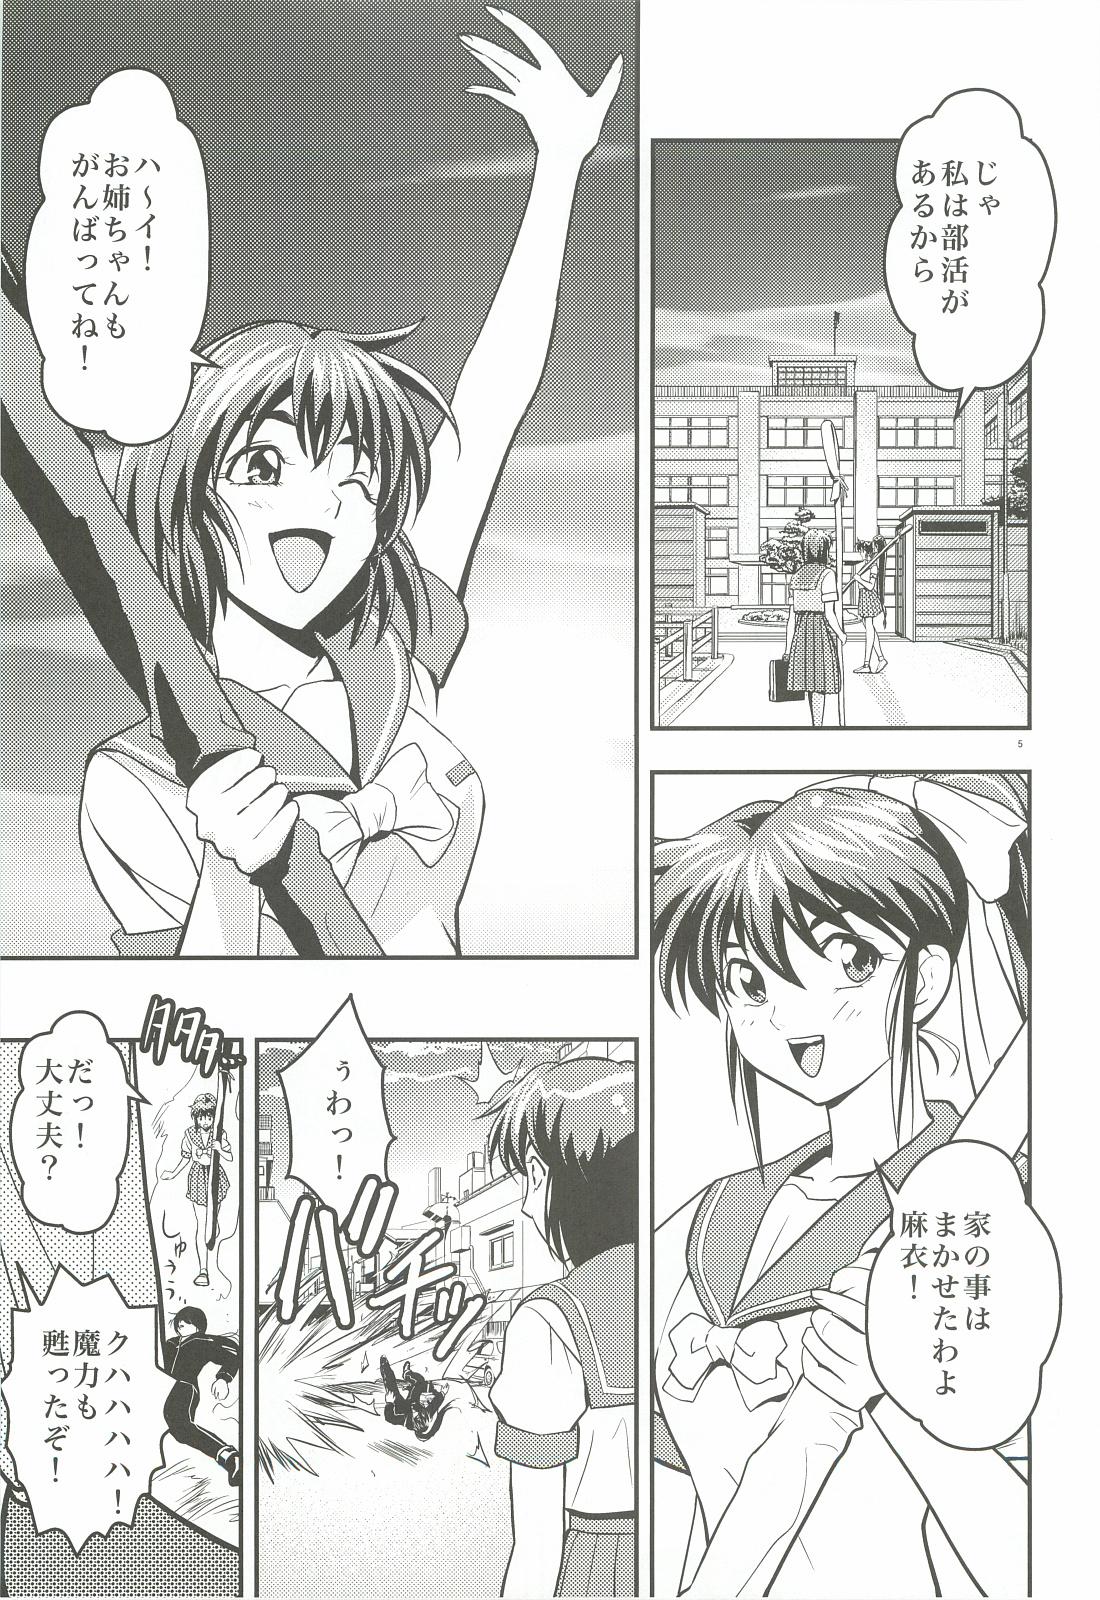 Famosa FallenXXangeL 1 Ingyaku no Mai Joukan - Twin angels Clothed Sex - Page 4